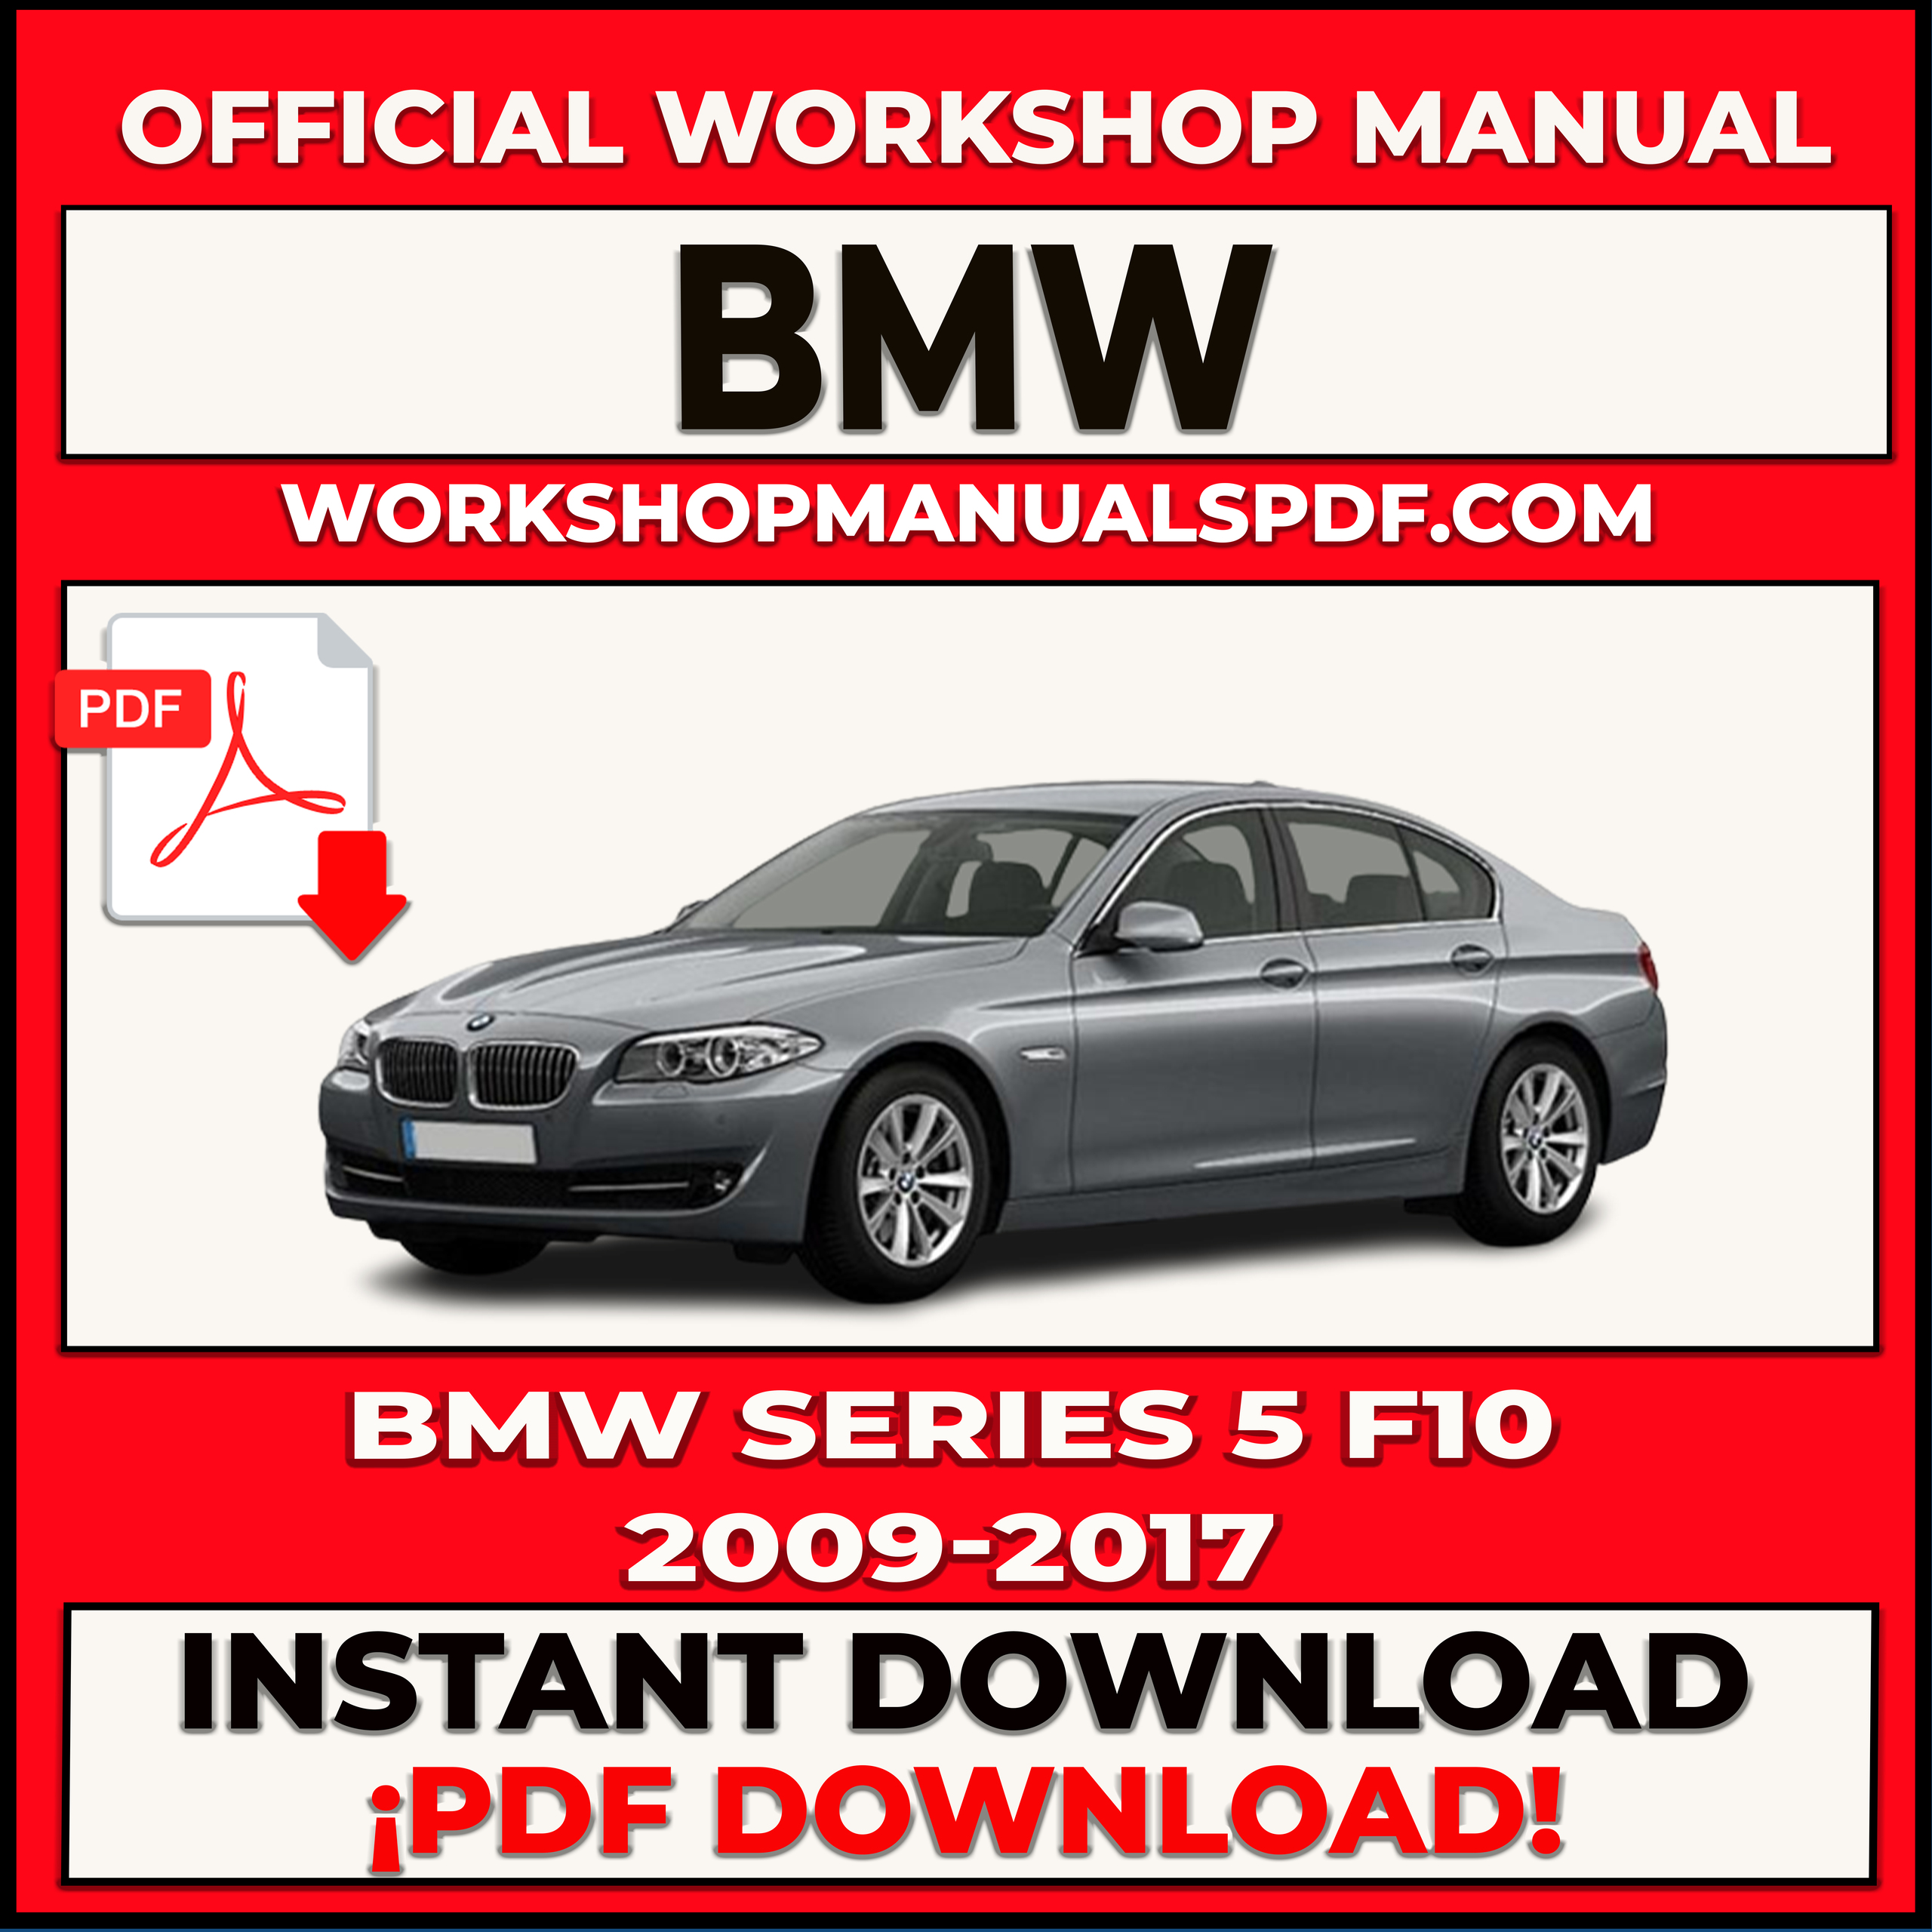 BMW SERIES 5 F10 2009-2017 WORKSHOP REPAIR MANUAL